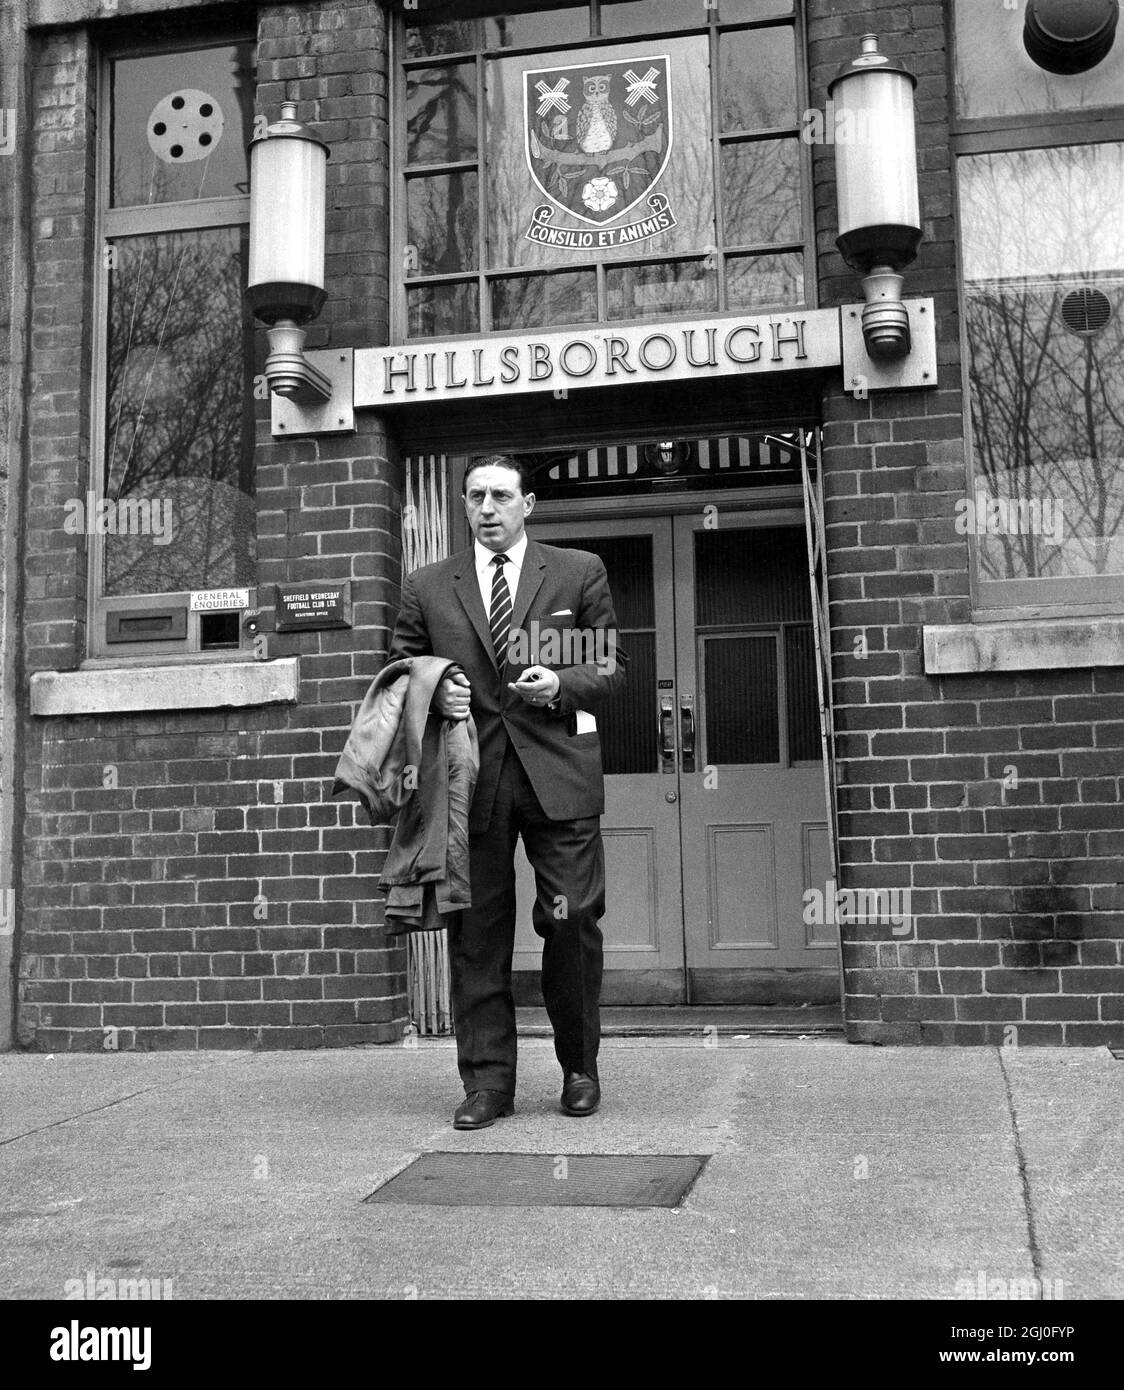 Harry Catterick, Manager von Sheffield Wednesday, verlässt den Club nach Streitigkeiten mit dem Verwaltungsrat. Catterick, der für die großen Erfolge des Teams in den letzten Saisons verantwortlich sein soll, sagte, dass er in den letzten Monaten Angebote von zehn Clubs erhalten habe. April 1961 Stockfoto